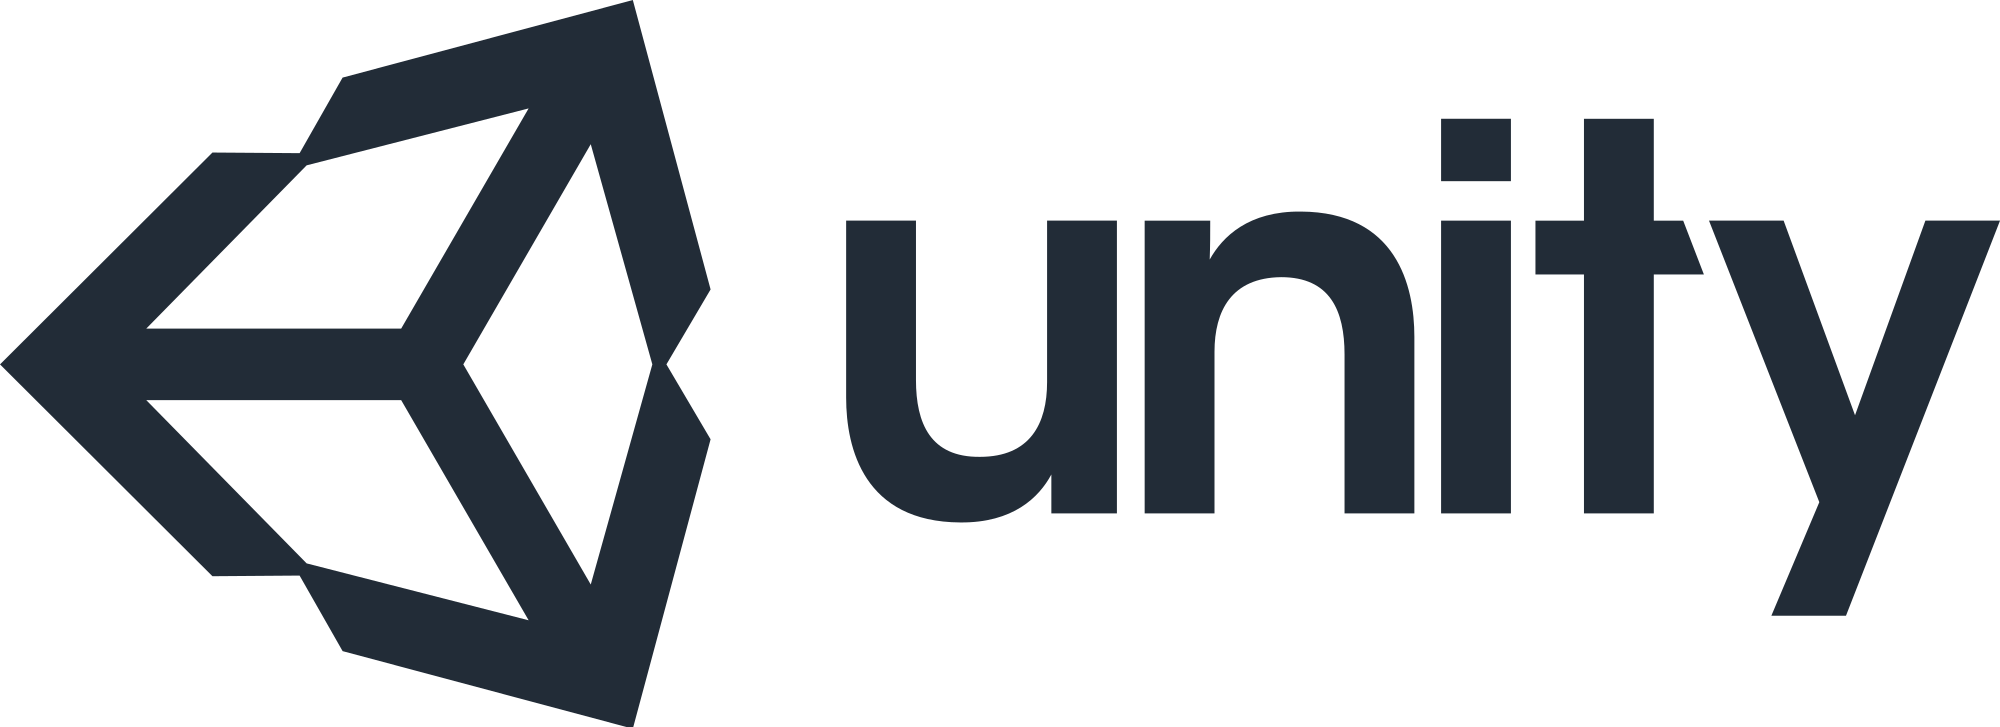 Unity 3D Logo